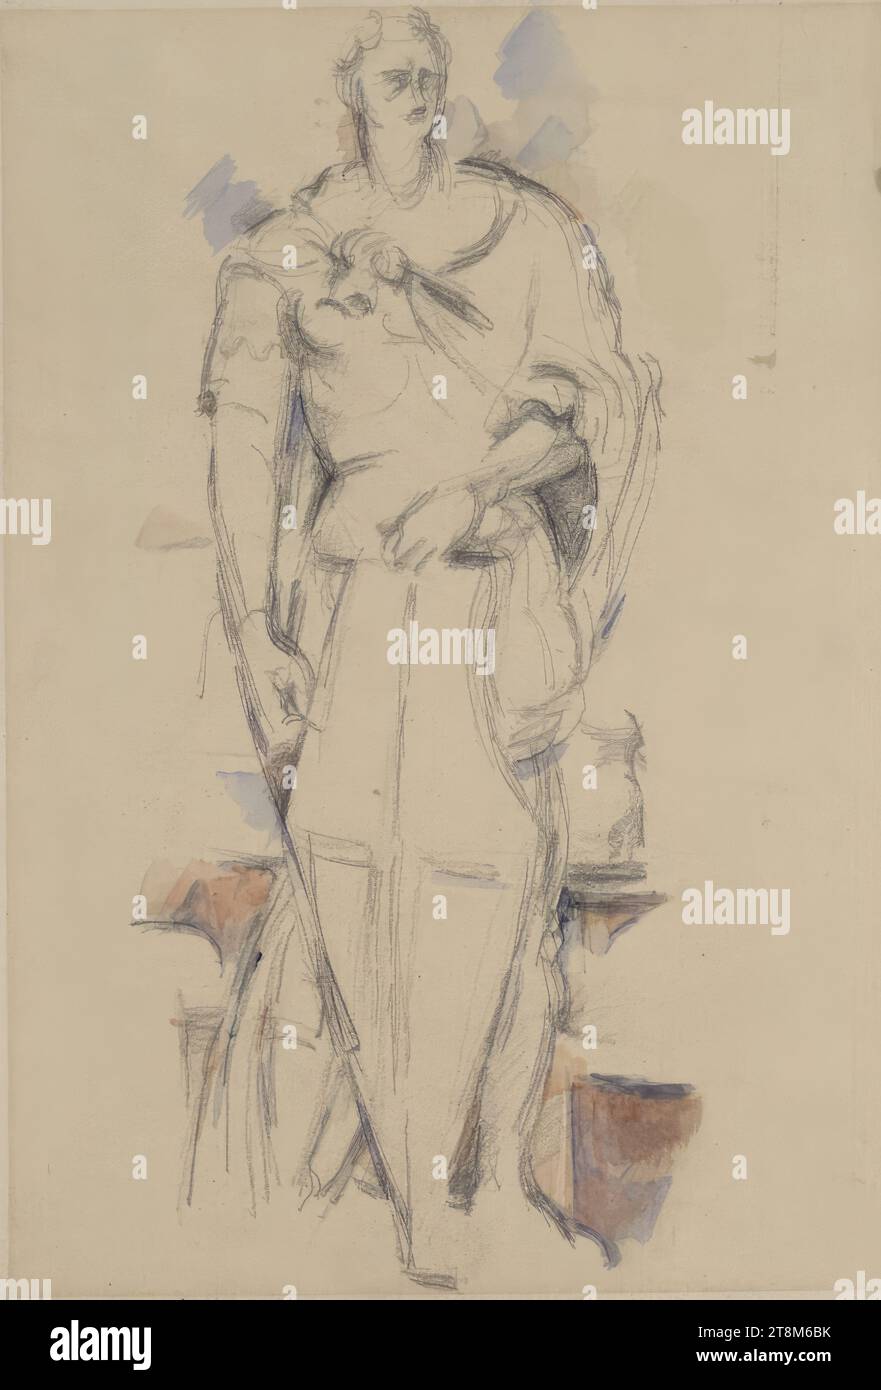 Saint Georges d'après Donatello, Paul Cézanne (Aix-en-Provence 1839 - 1906 Aix-en-Provence), c. 1890, dessin, craie noire, pinceau, aquarelle ; adhésif poussant à droite, 32 x 24,5 cm Banque D'Images